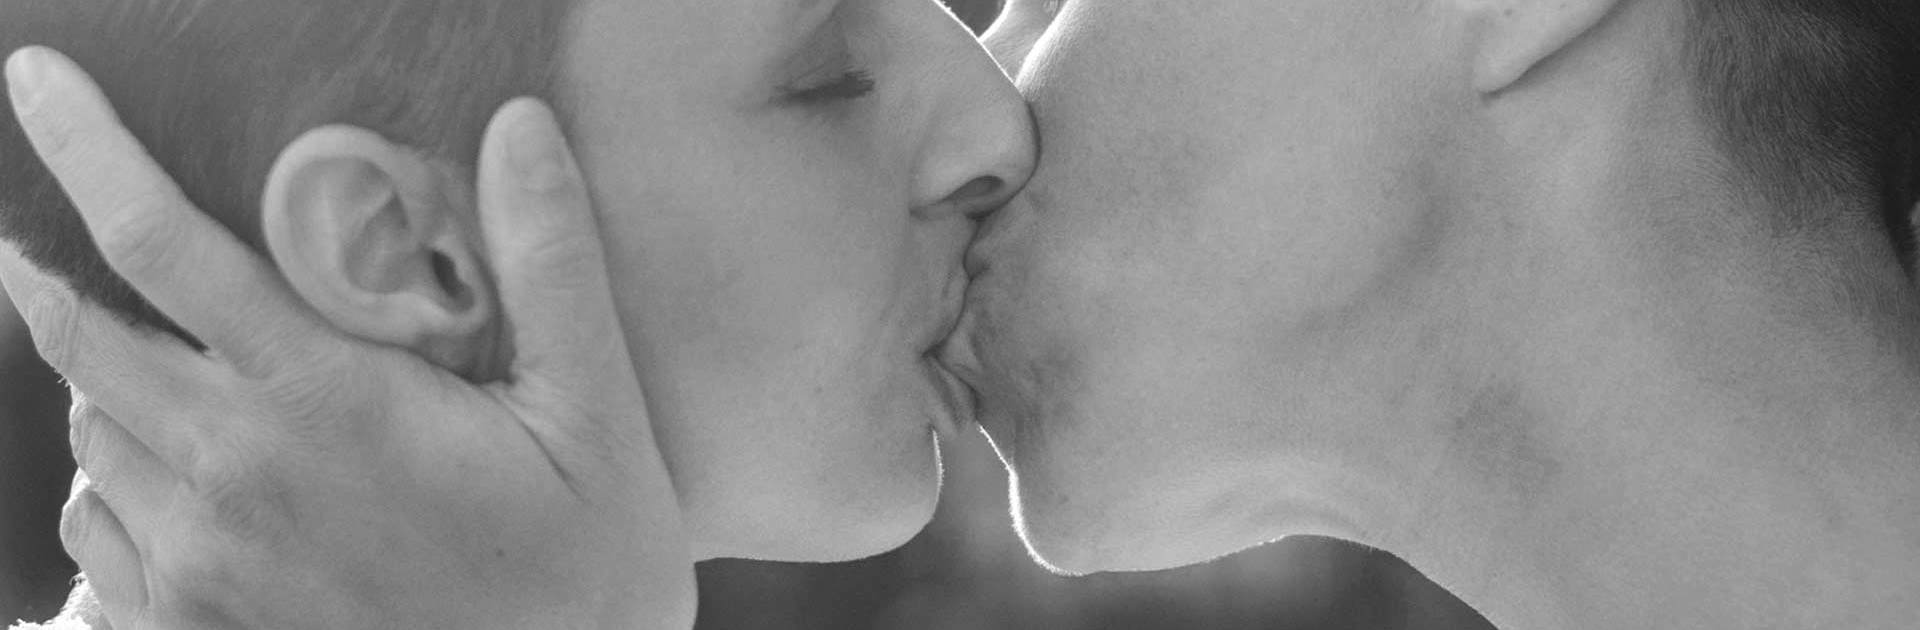 Två personer som kysser varandra.